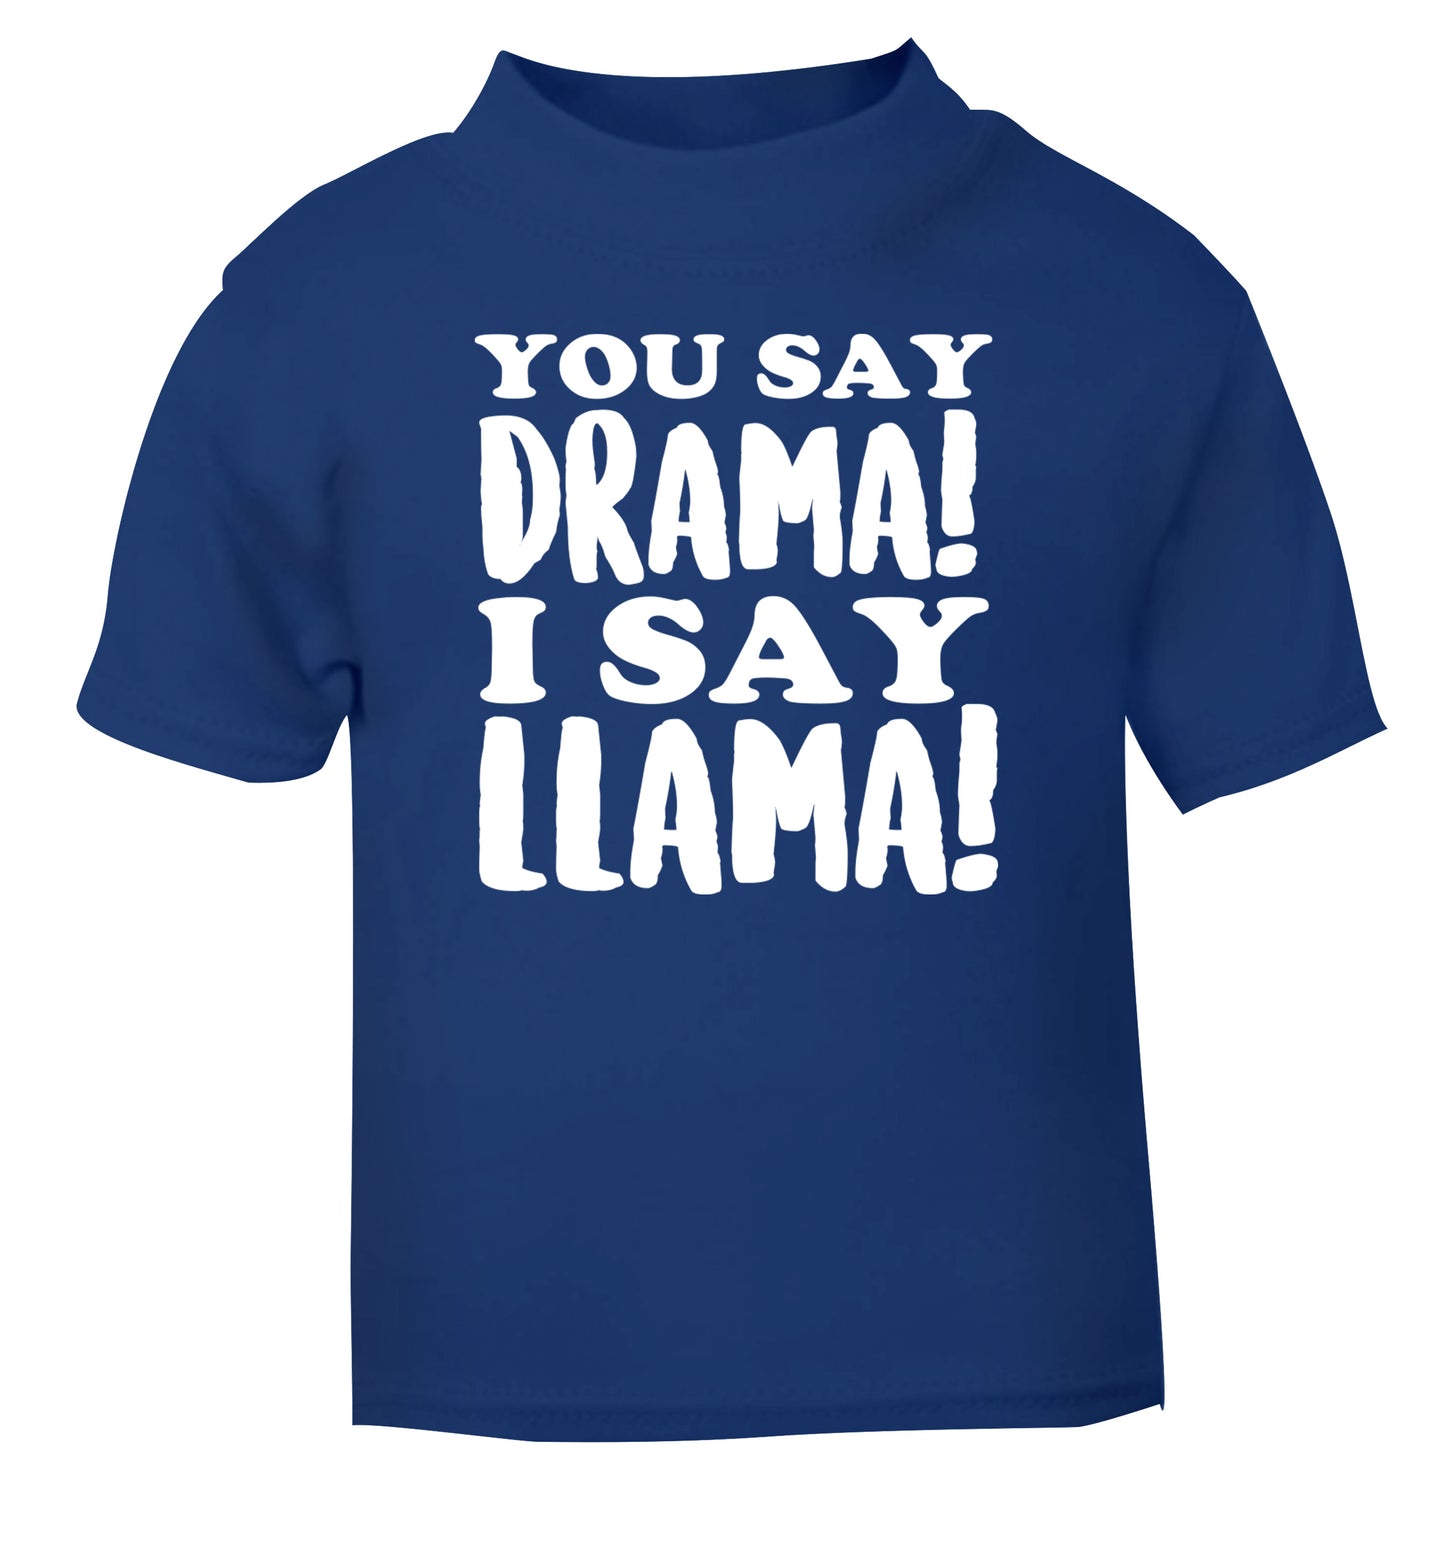 You say drama I say llama! blue Baby Toddler Tshirt 2 Years